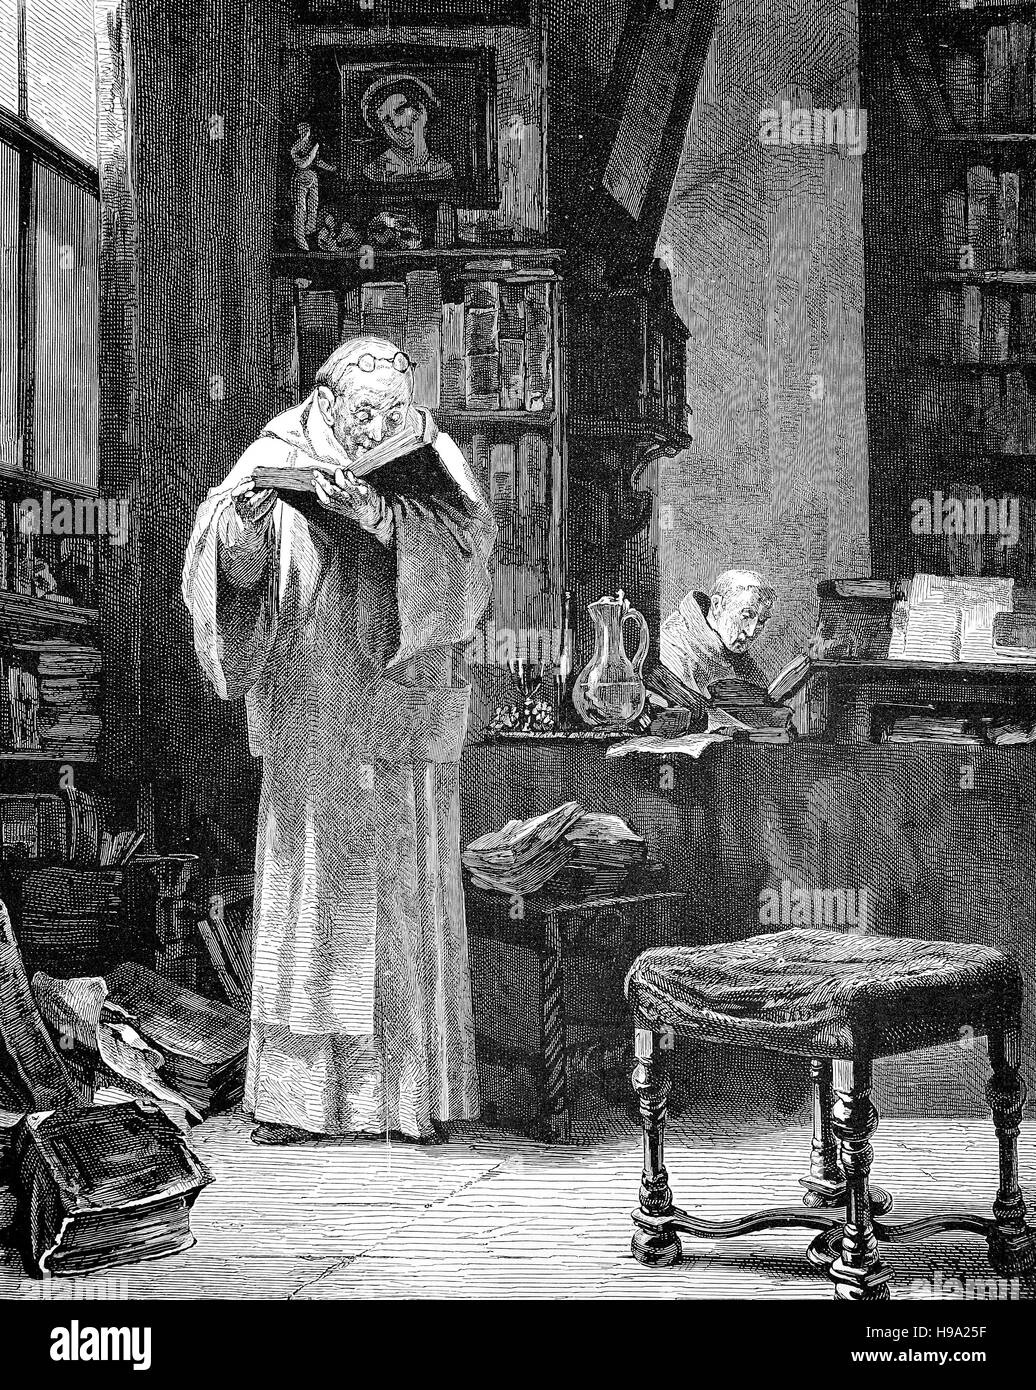 Des études scolaires au début de la Réforme protestante, moyen-âge, 1500, illustration historique Banque D'Images